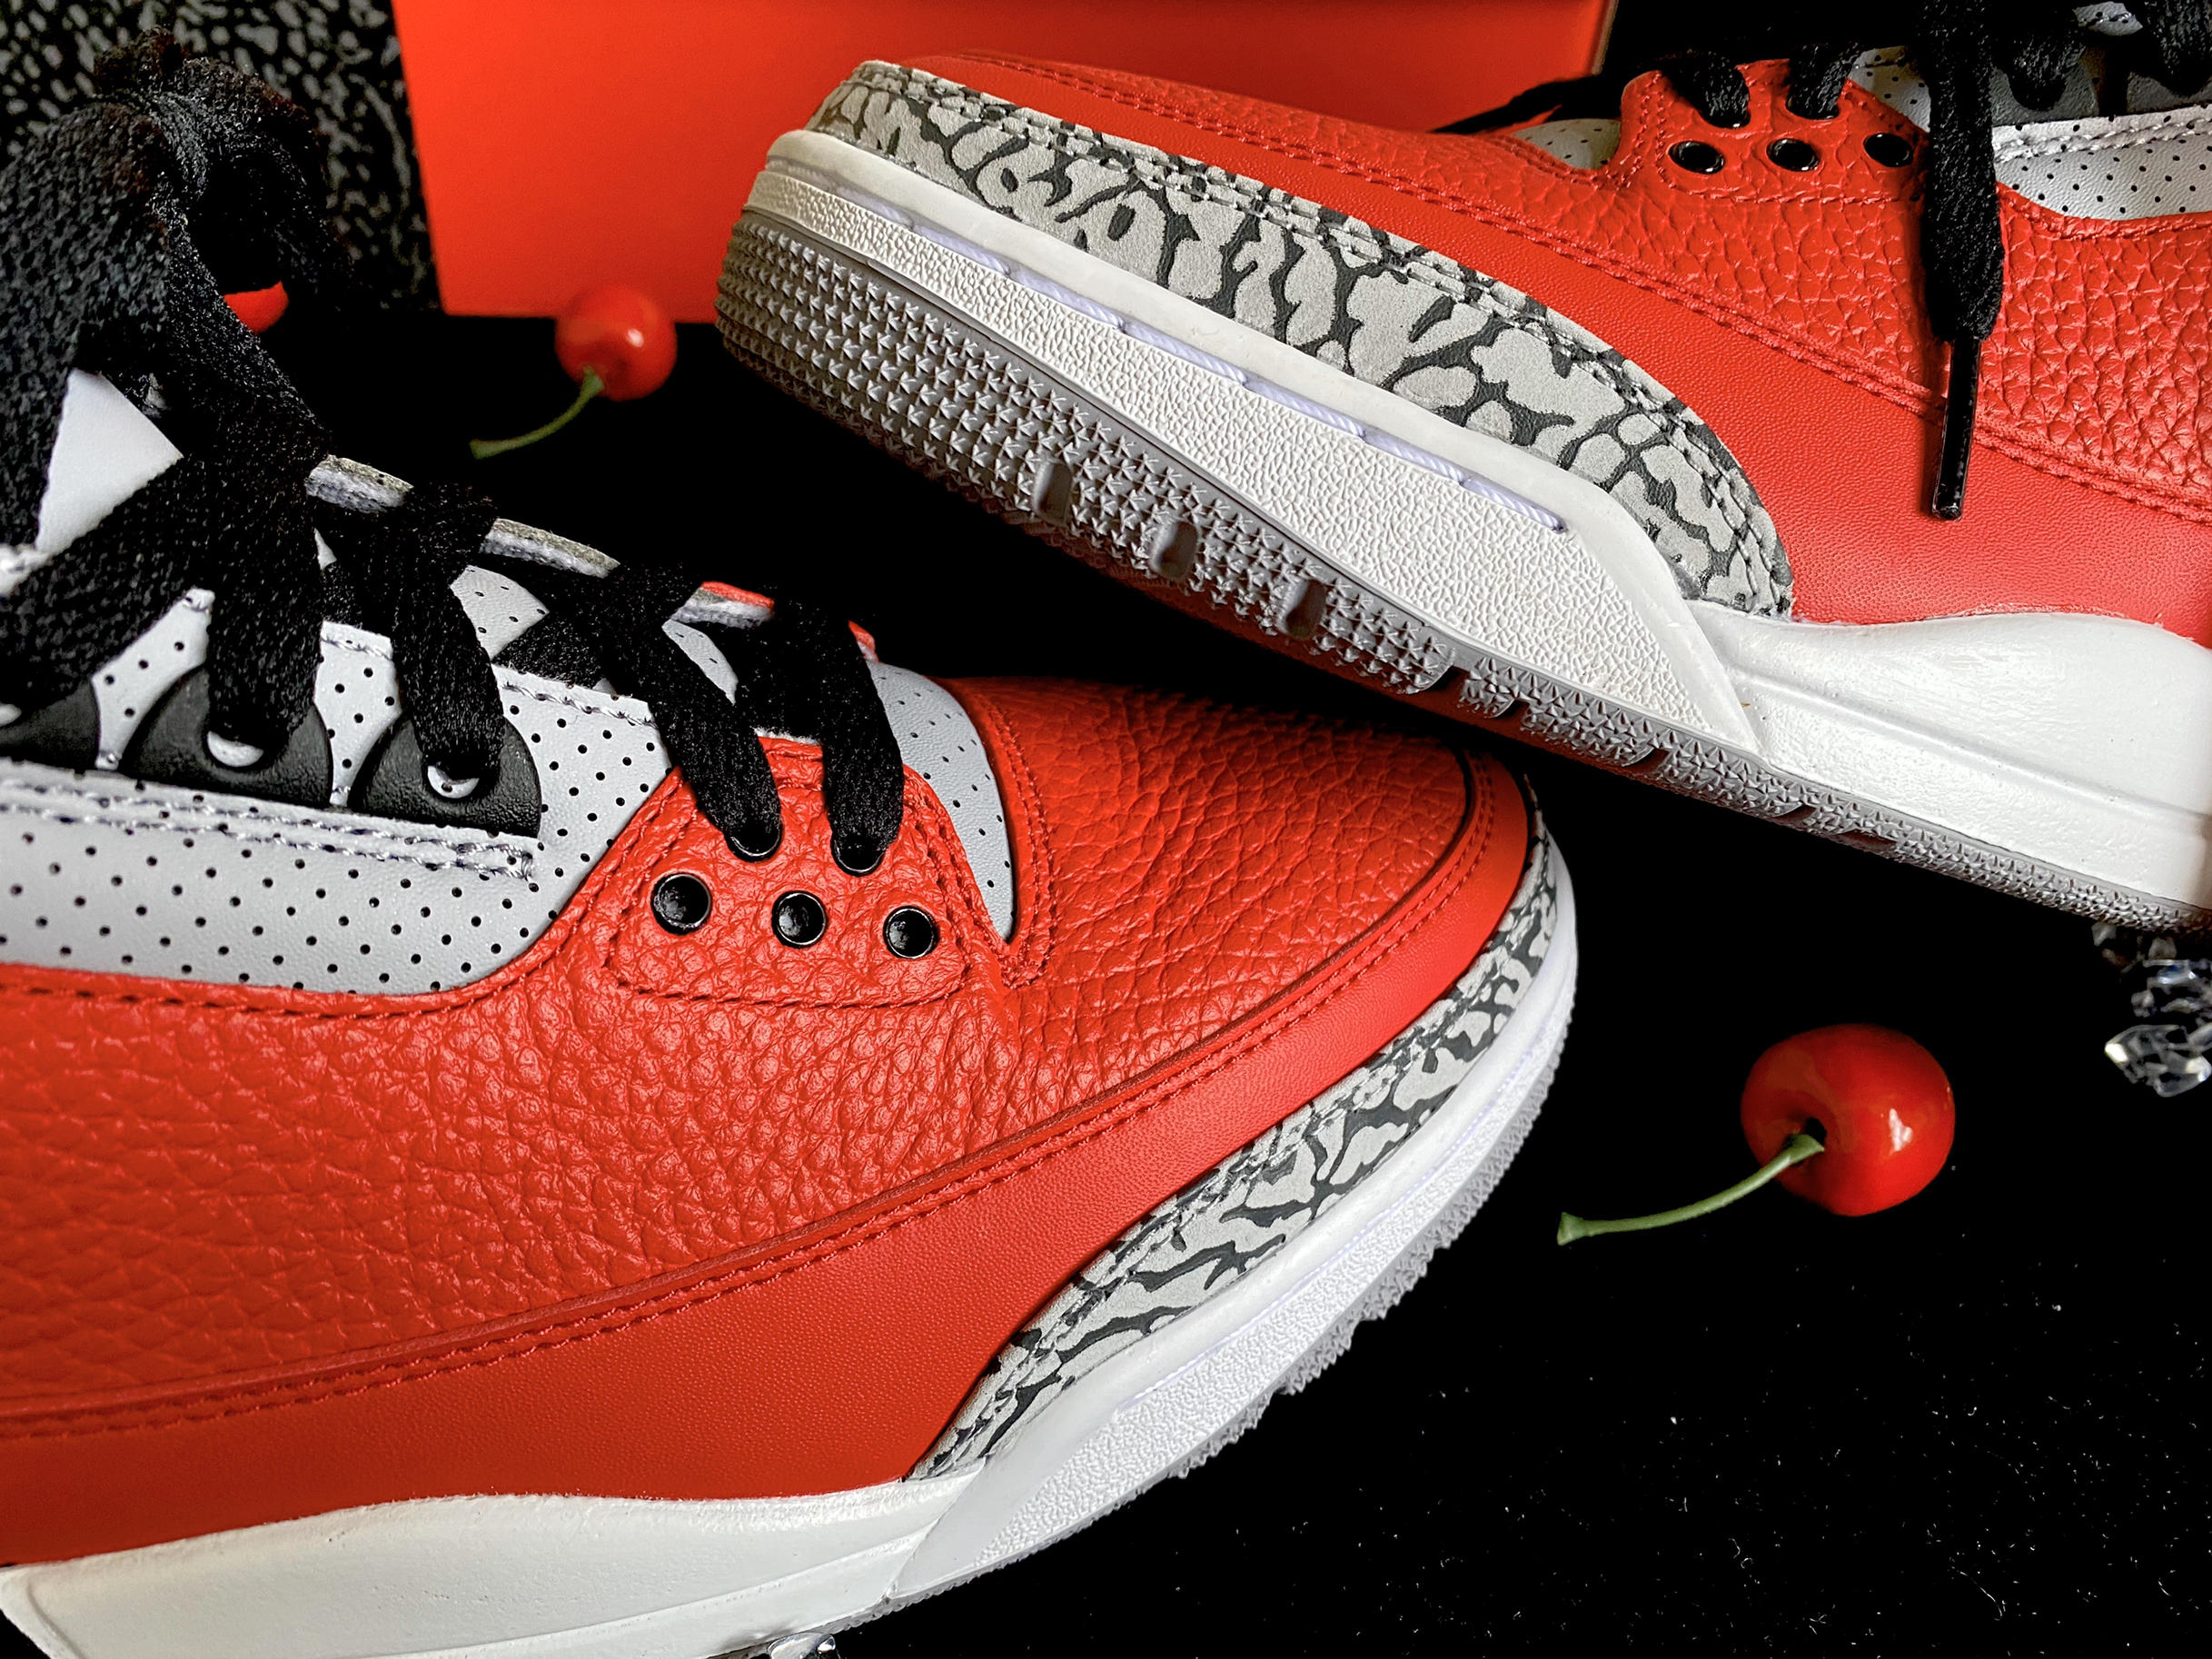 Air Jordan 3 Retro “Unite” Fire Red CK5692-600 For Sale – Sneaker Hello